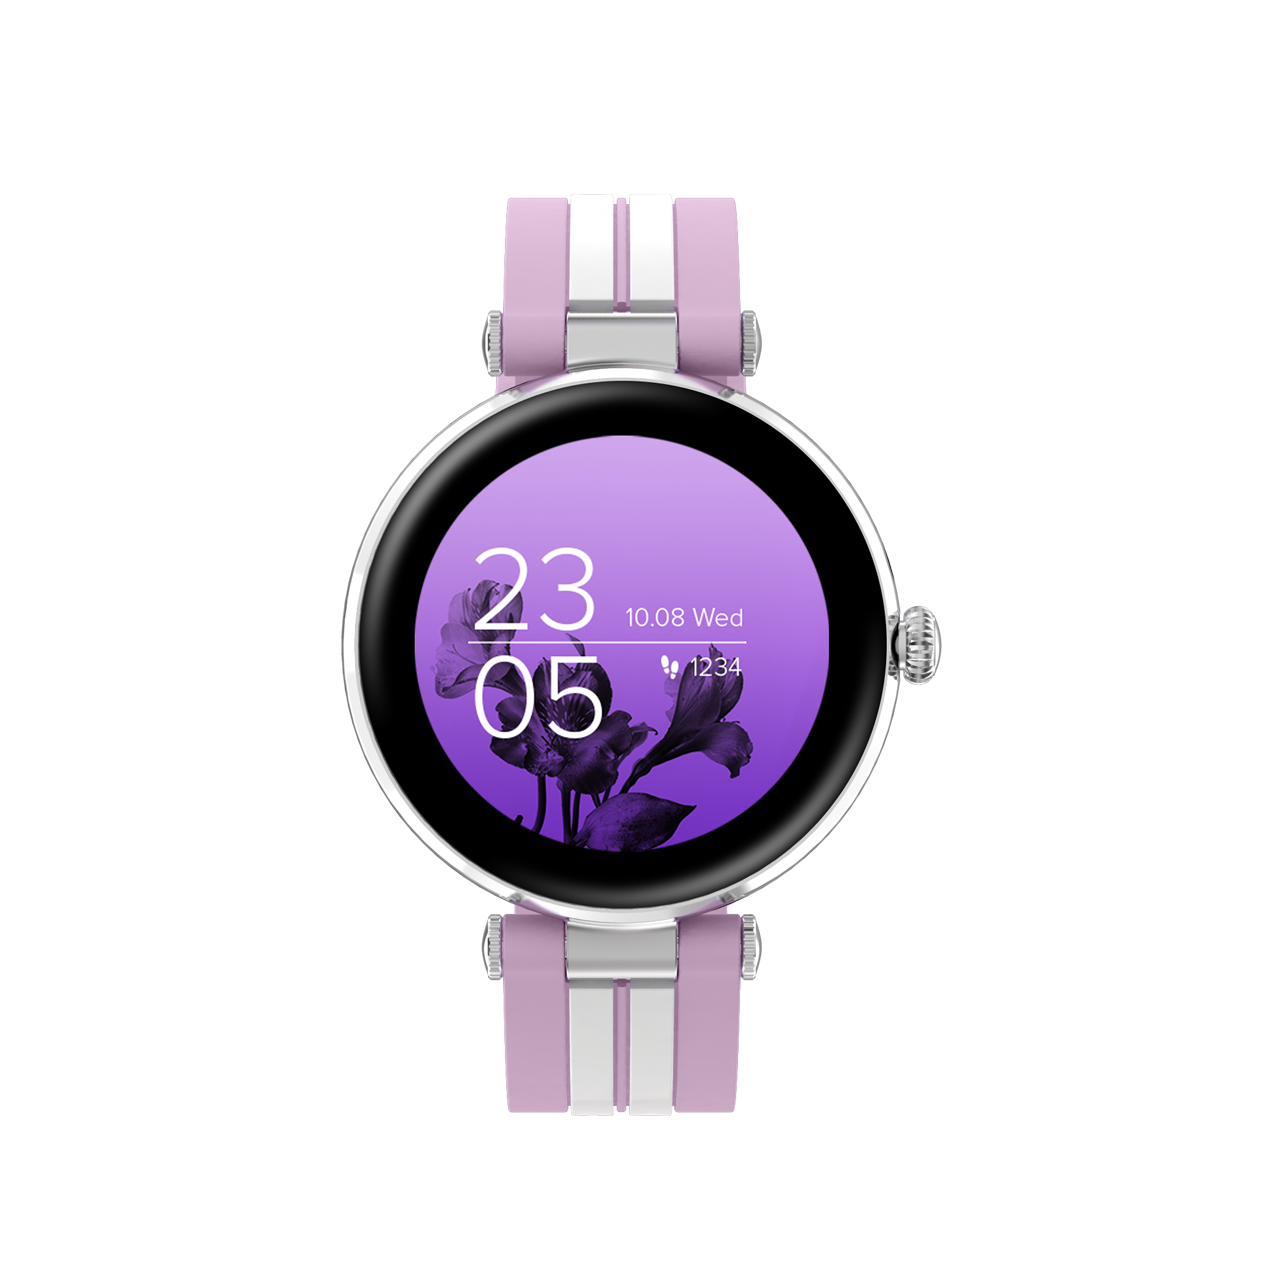 Смарт-часы Canyon Semifreddo SW-61, фиолетовый/серебристый